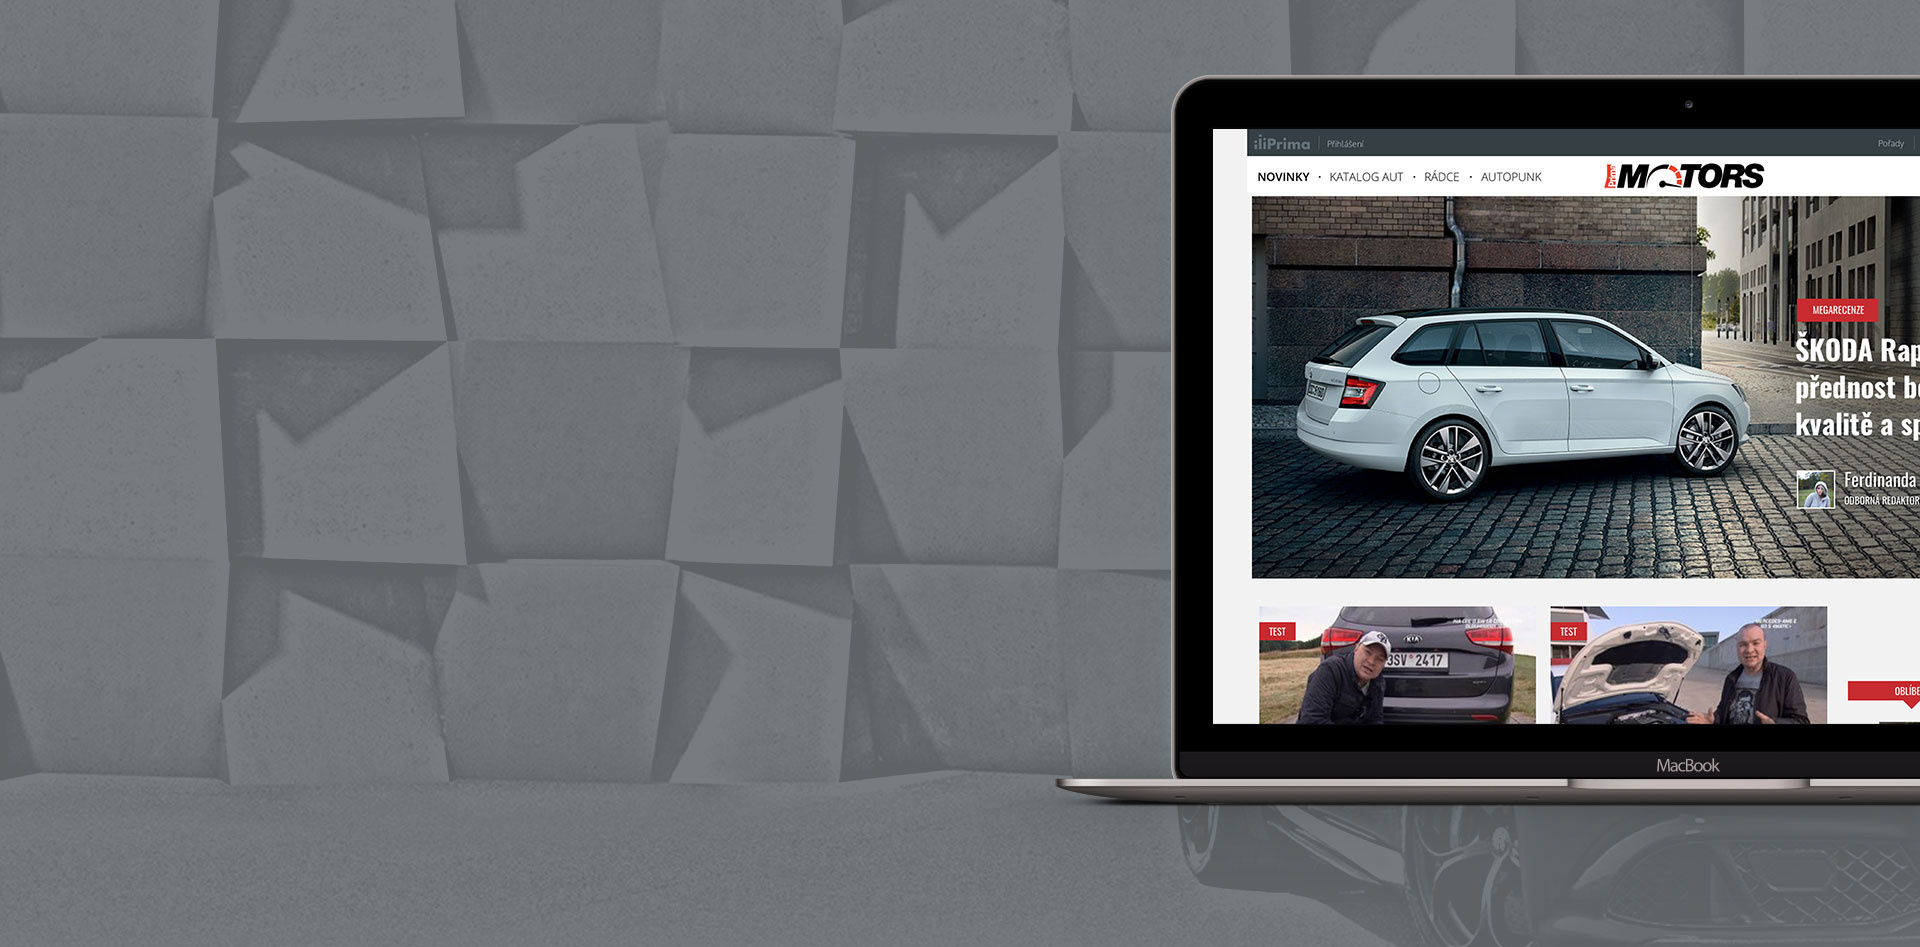 Car news portal integrated into a huge portal platform